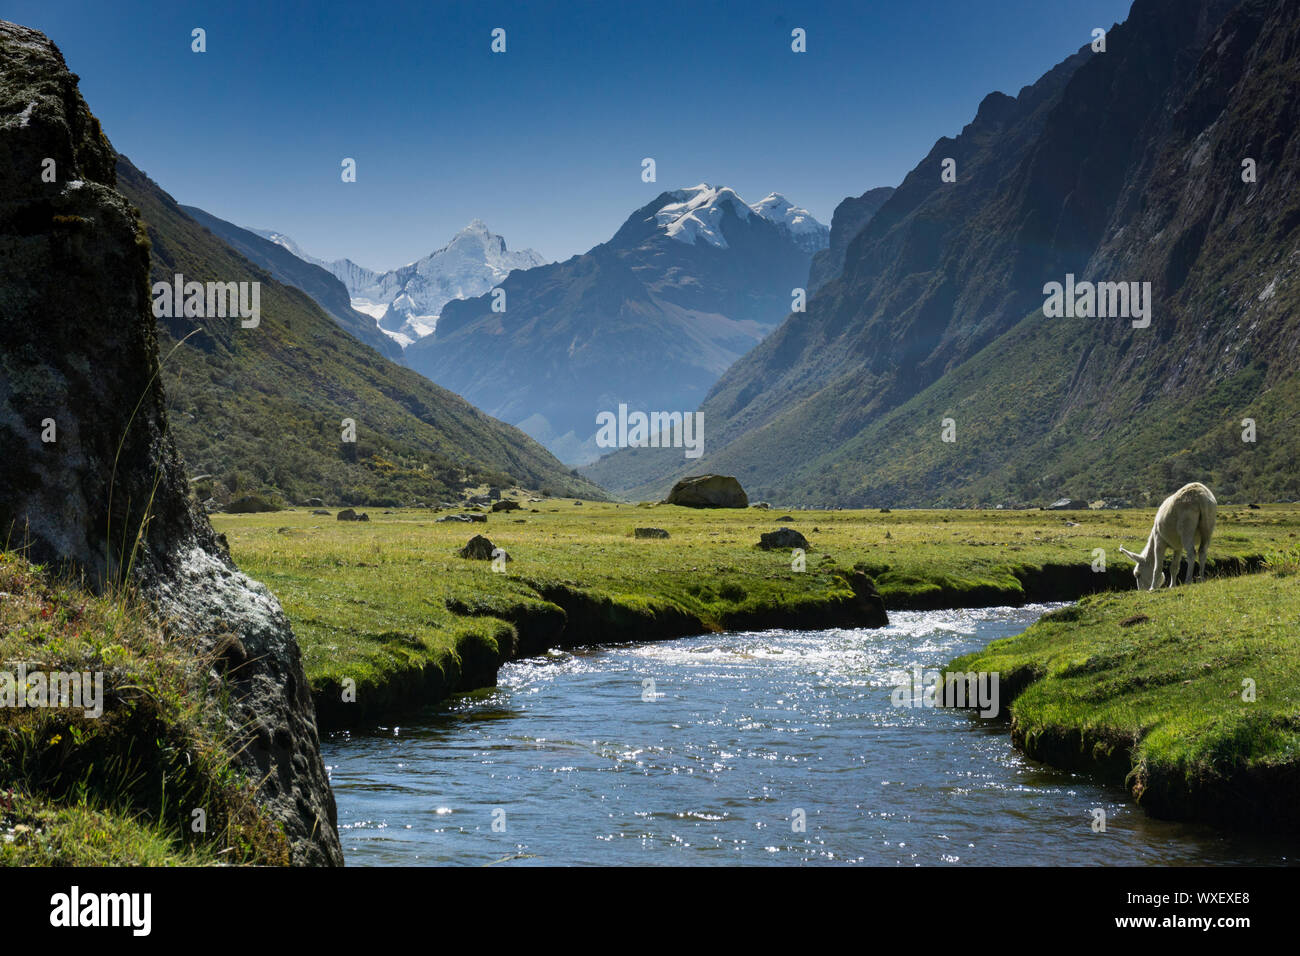 Paysage de montagne dans les Andes du Pérou avec un cheval blanc s'abreuver à un ruisseau de montagne Banque D'Images